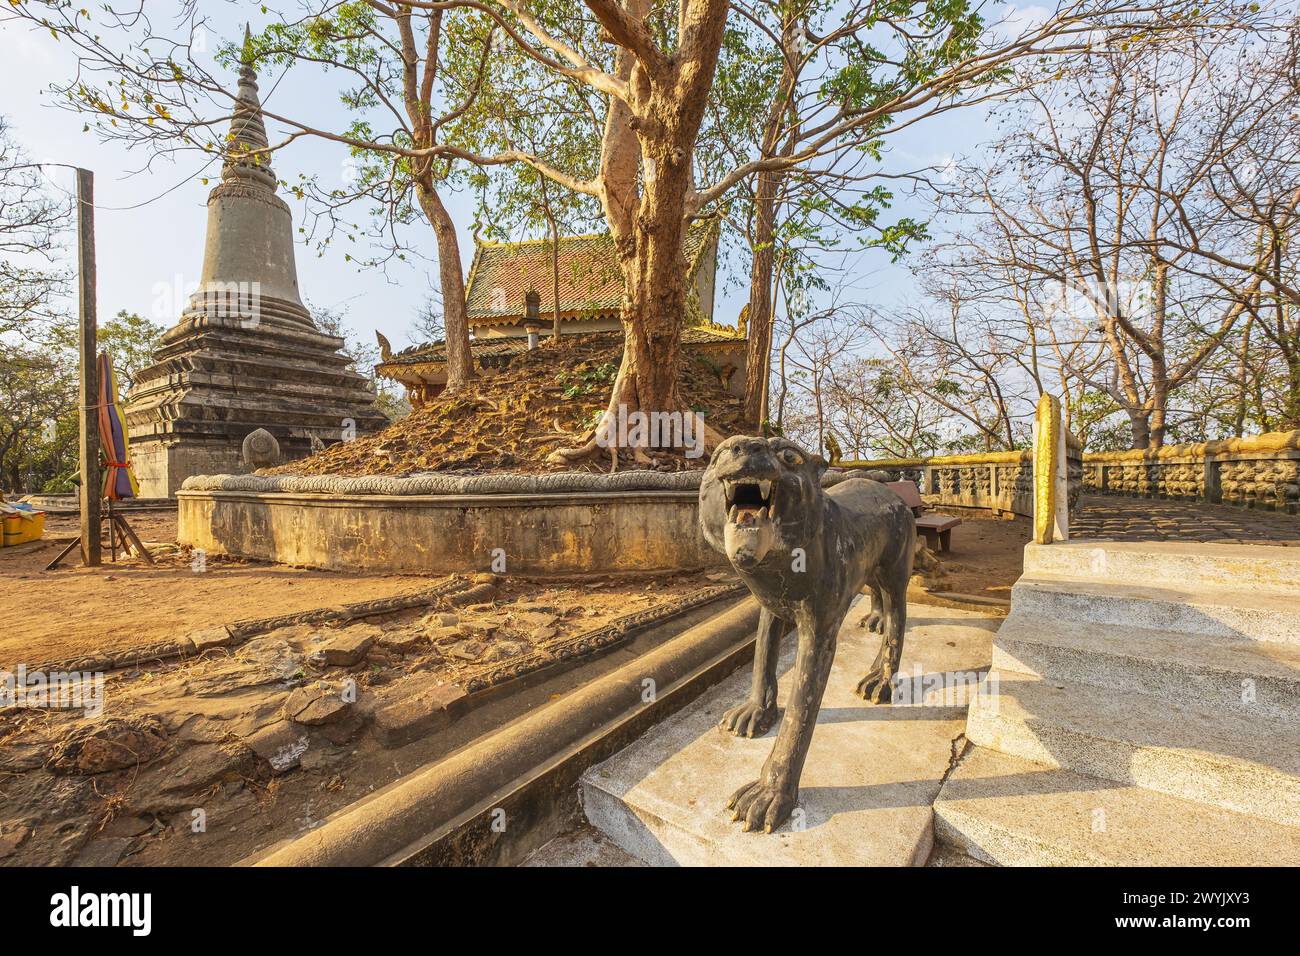 Camboya, provincia de Kandal, Oudong, antigua capital de Camboya durante casi 250 años hasta 1866 y monumental necrópolis real esparcida en una colina Foto de stock